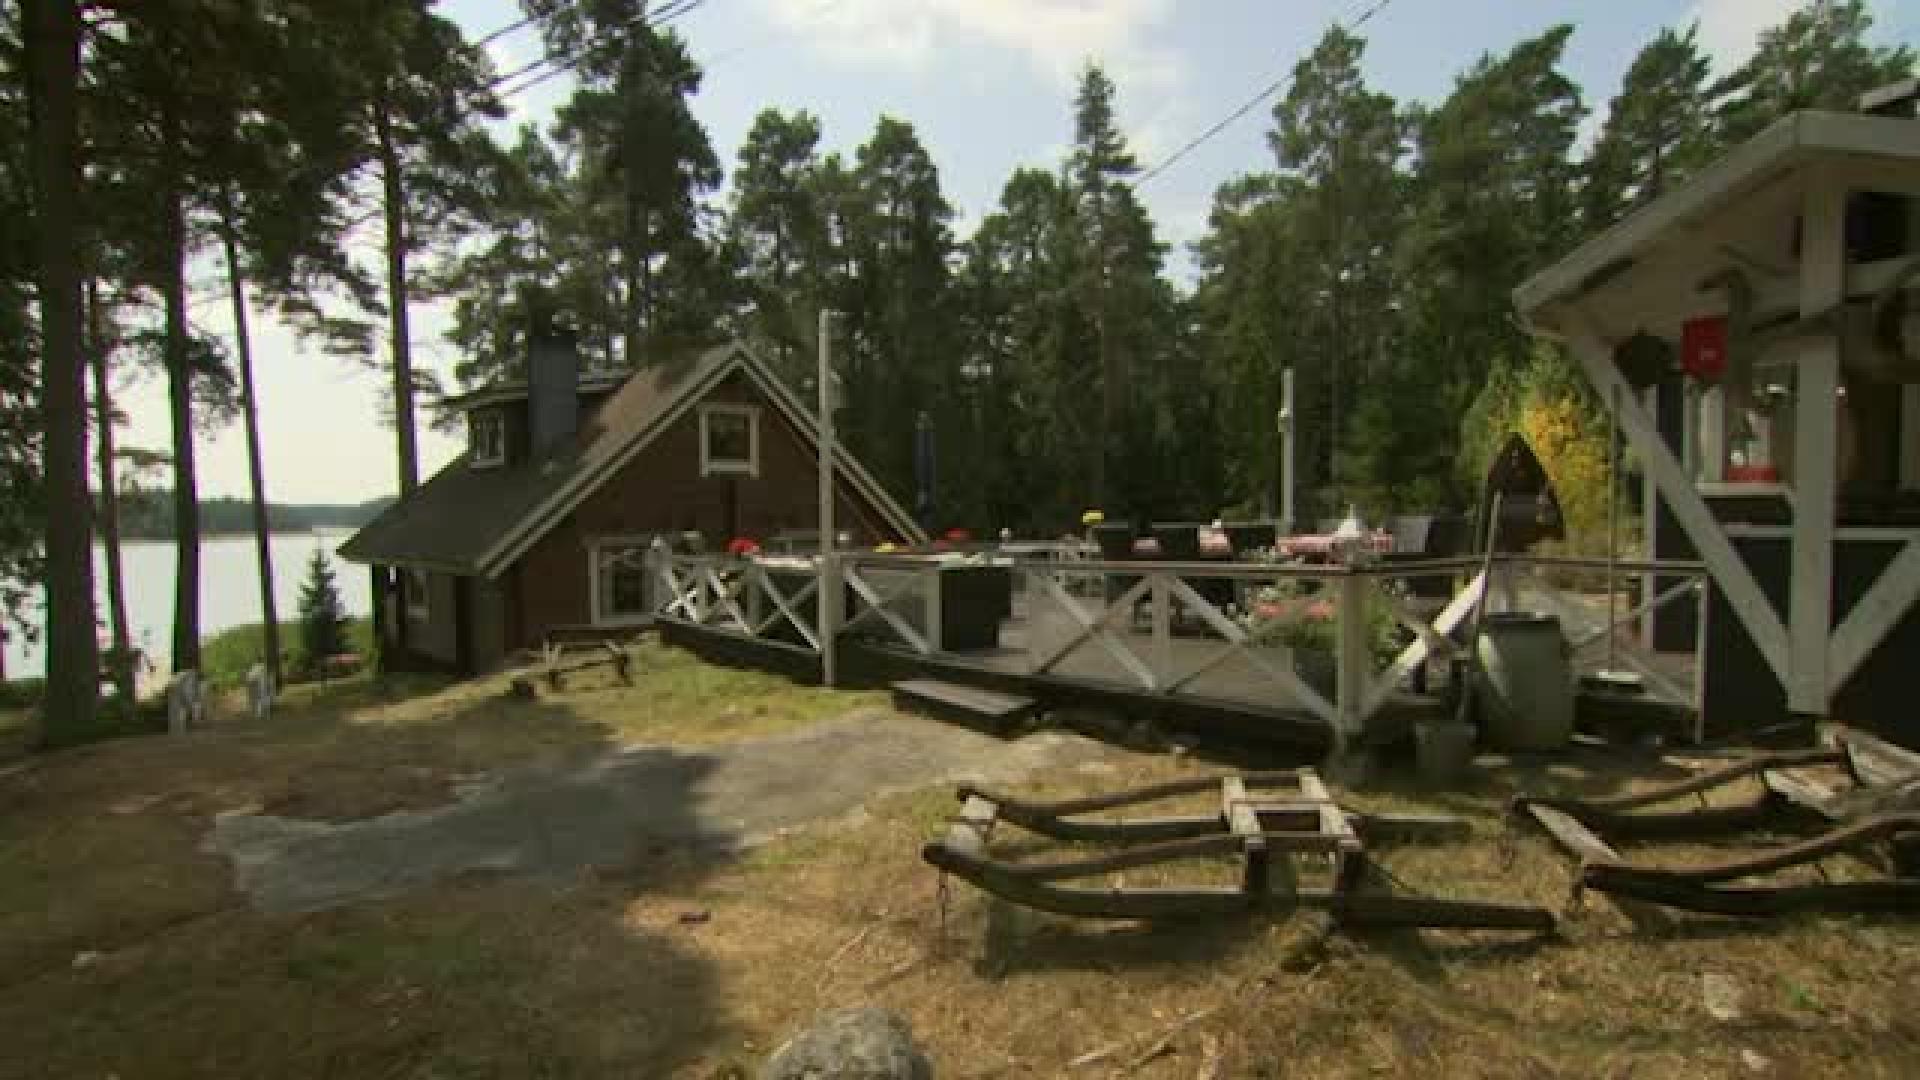 Onko tällä saarimökillä Suomen suurin terassi?